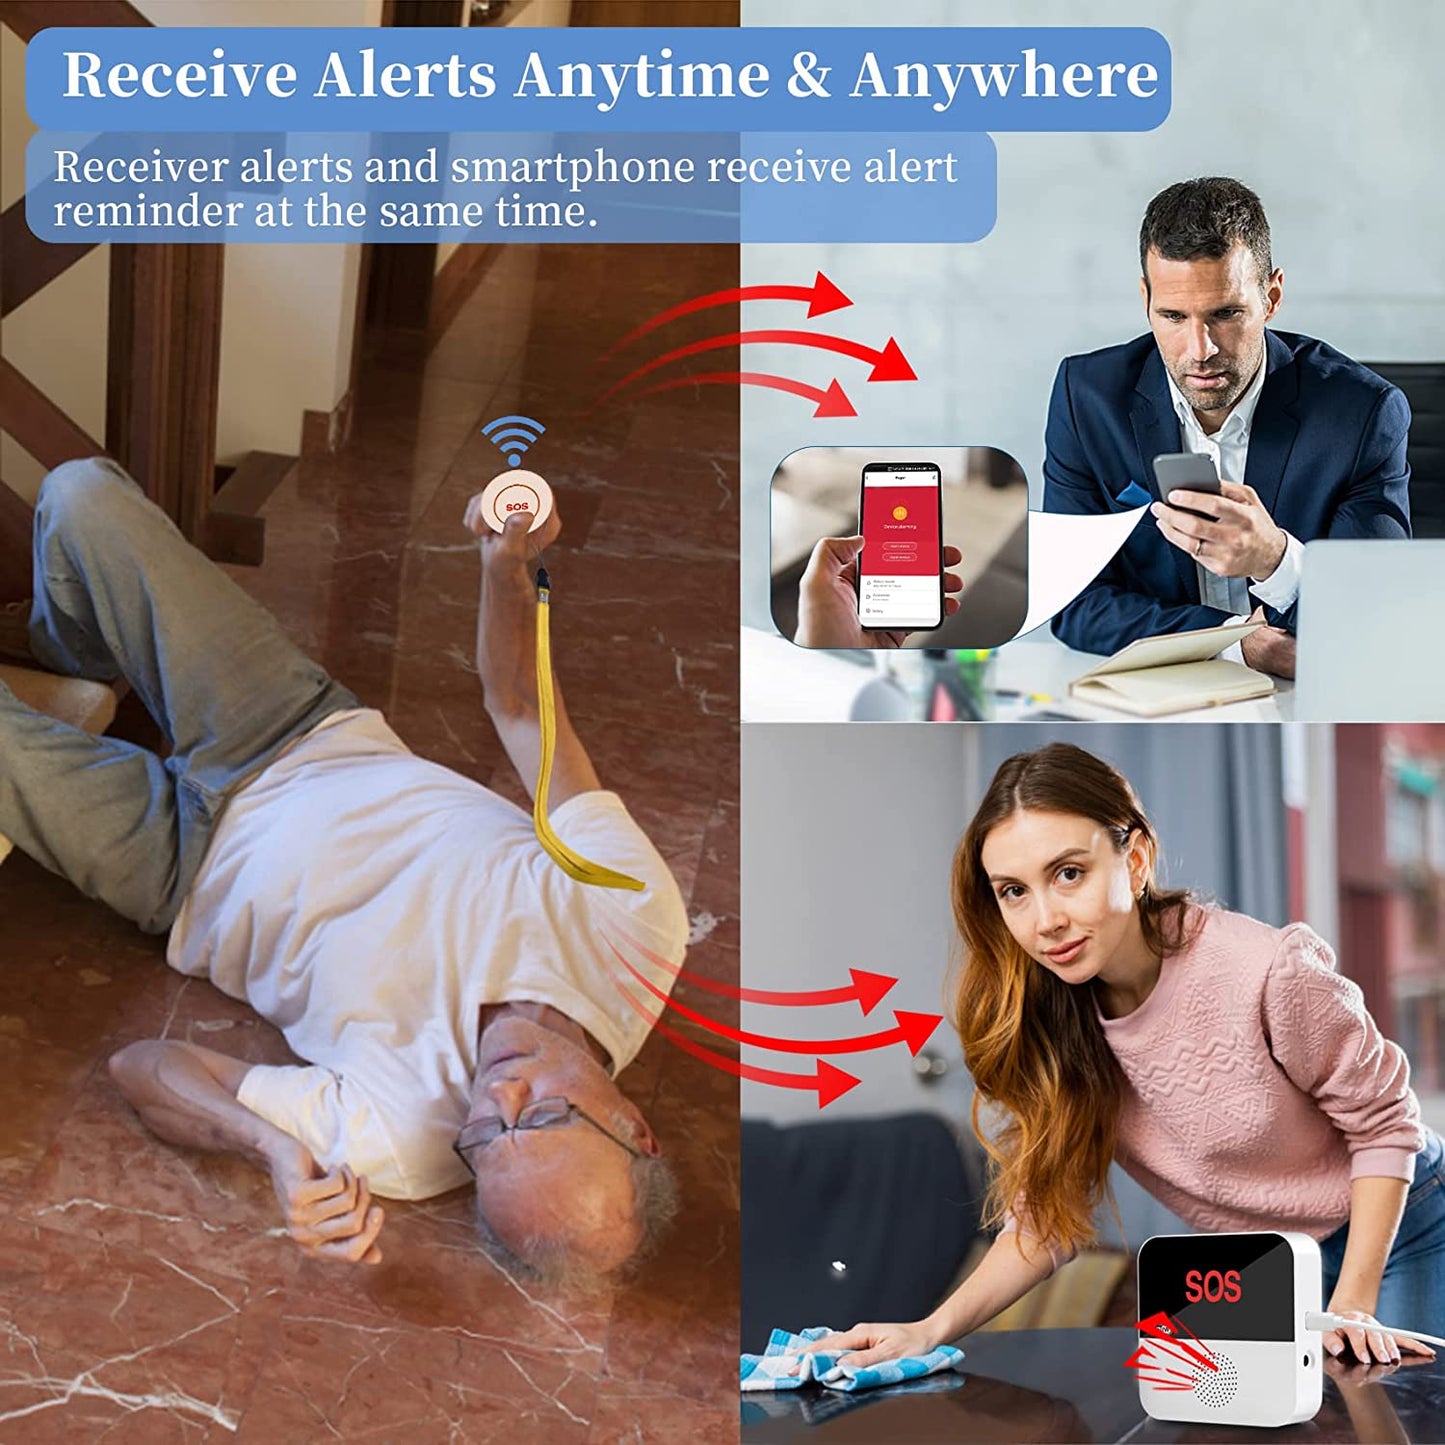 Sistema de localización para personas mayores con WiFi inalámbrico, botón de llamada SOS, sistema de alerta médica SOS de emergencia